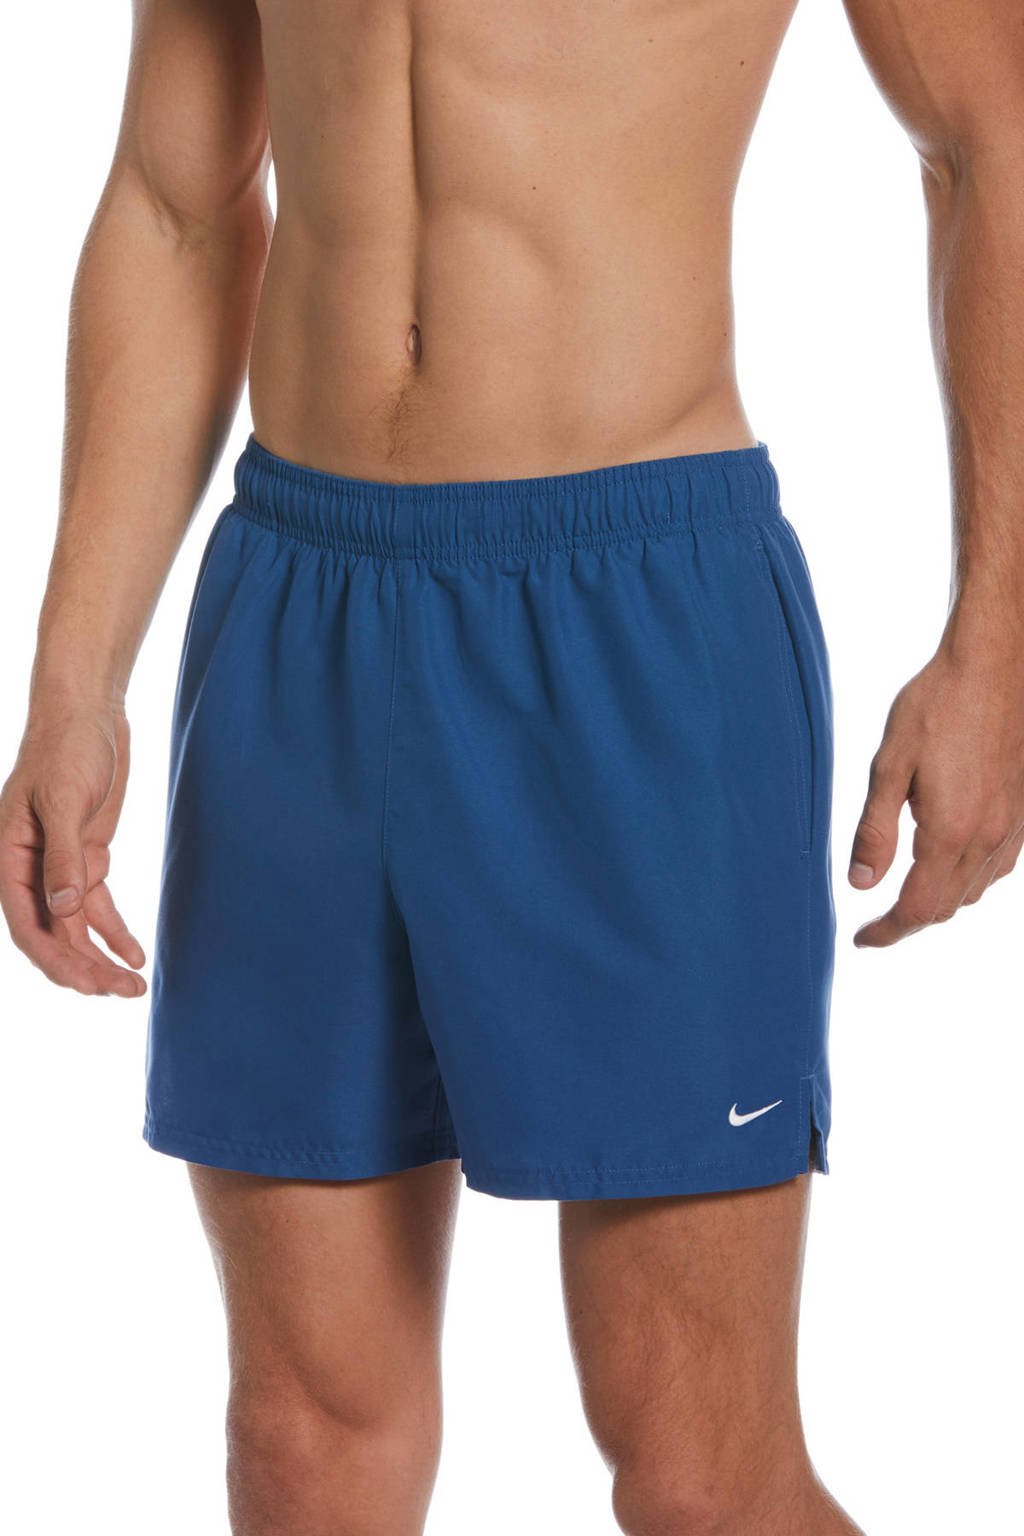 Nike zwemshort Essential donkerblauw